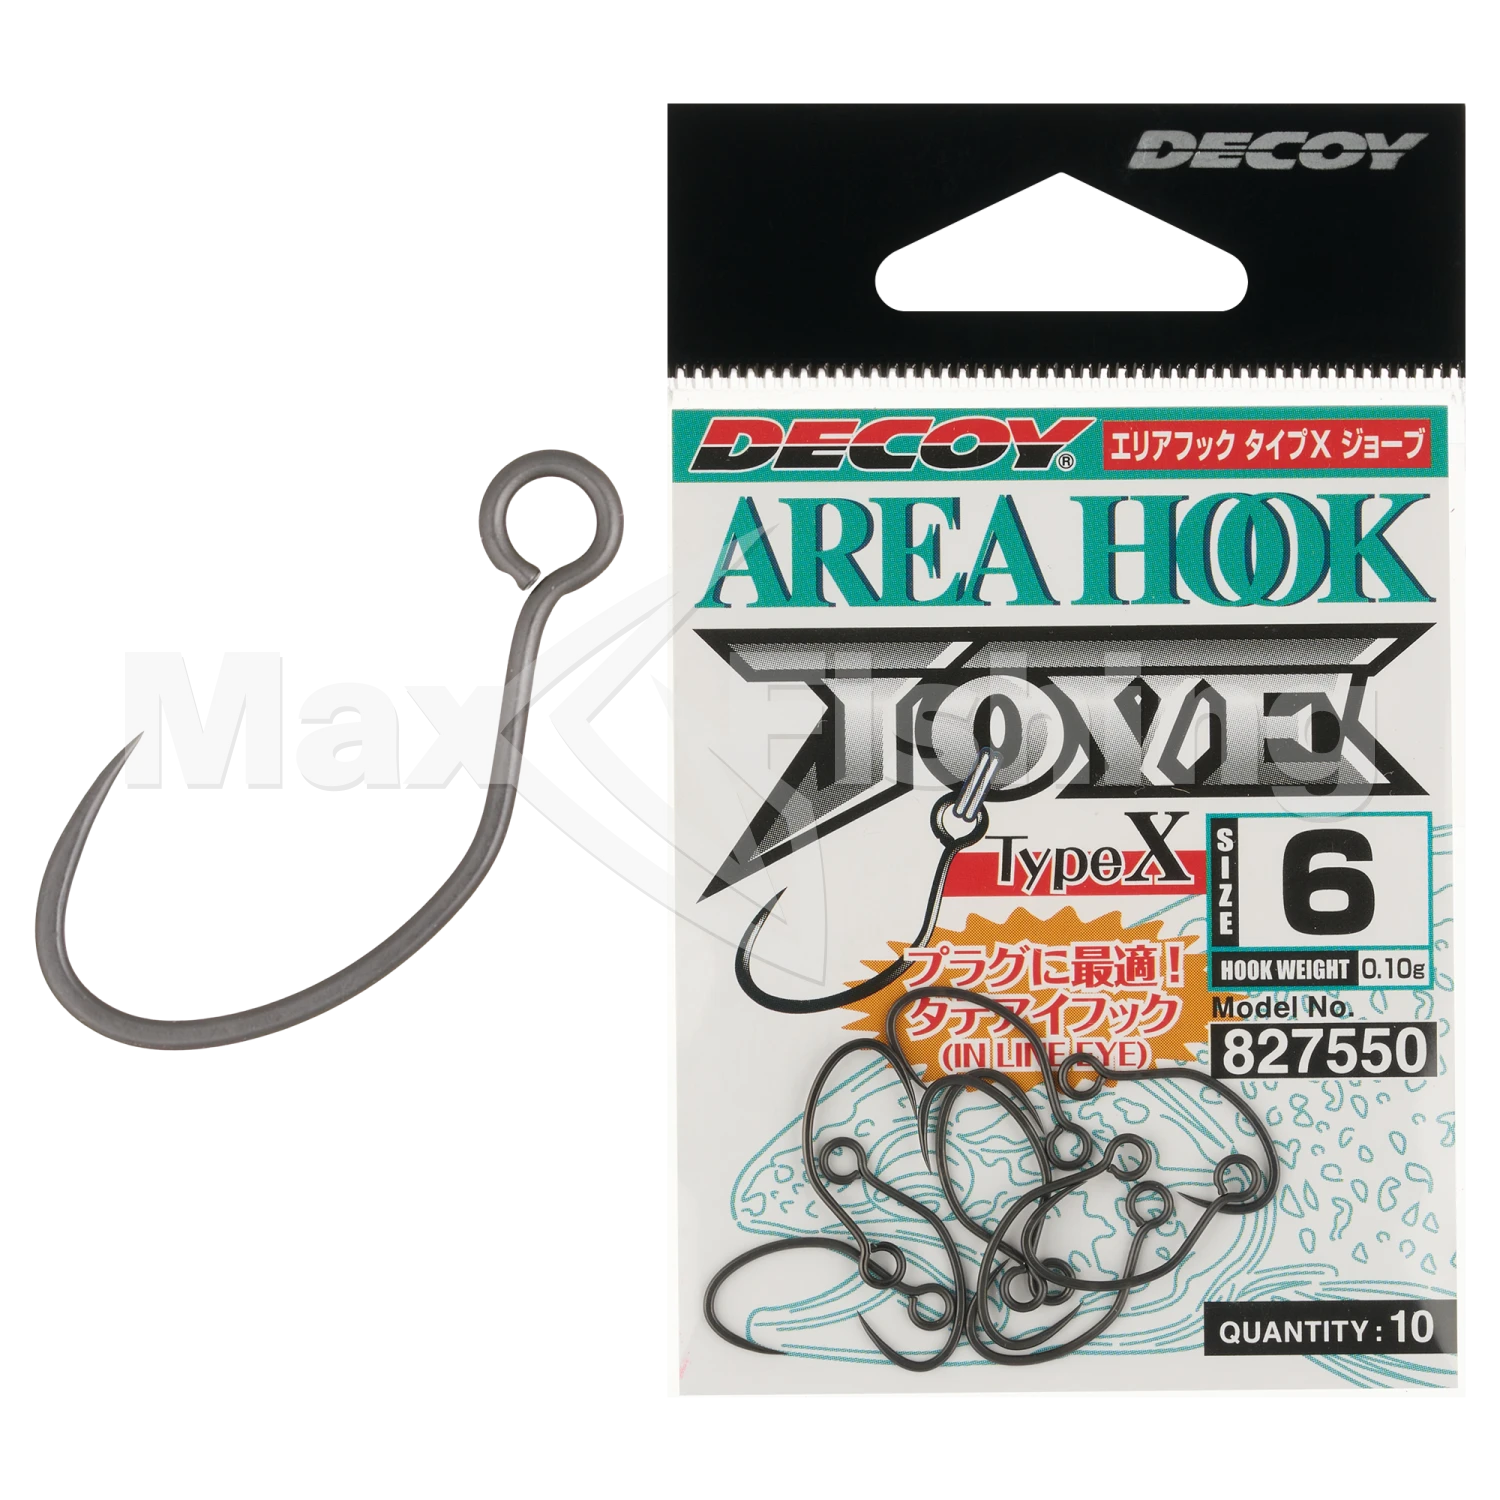 Крючок одинарный Decoy AH-10 Area Hook Type X Jove #6 (10шт)